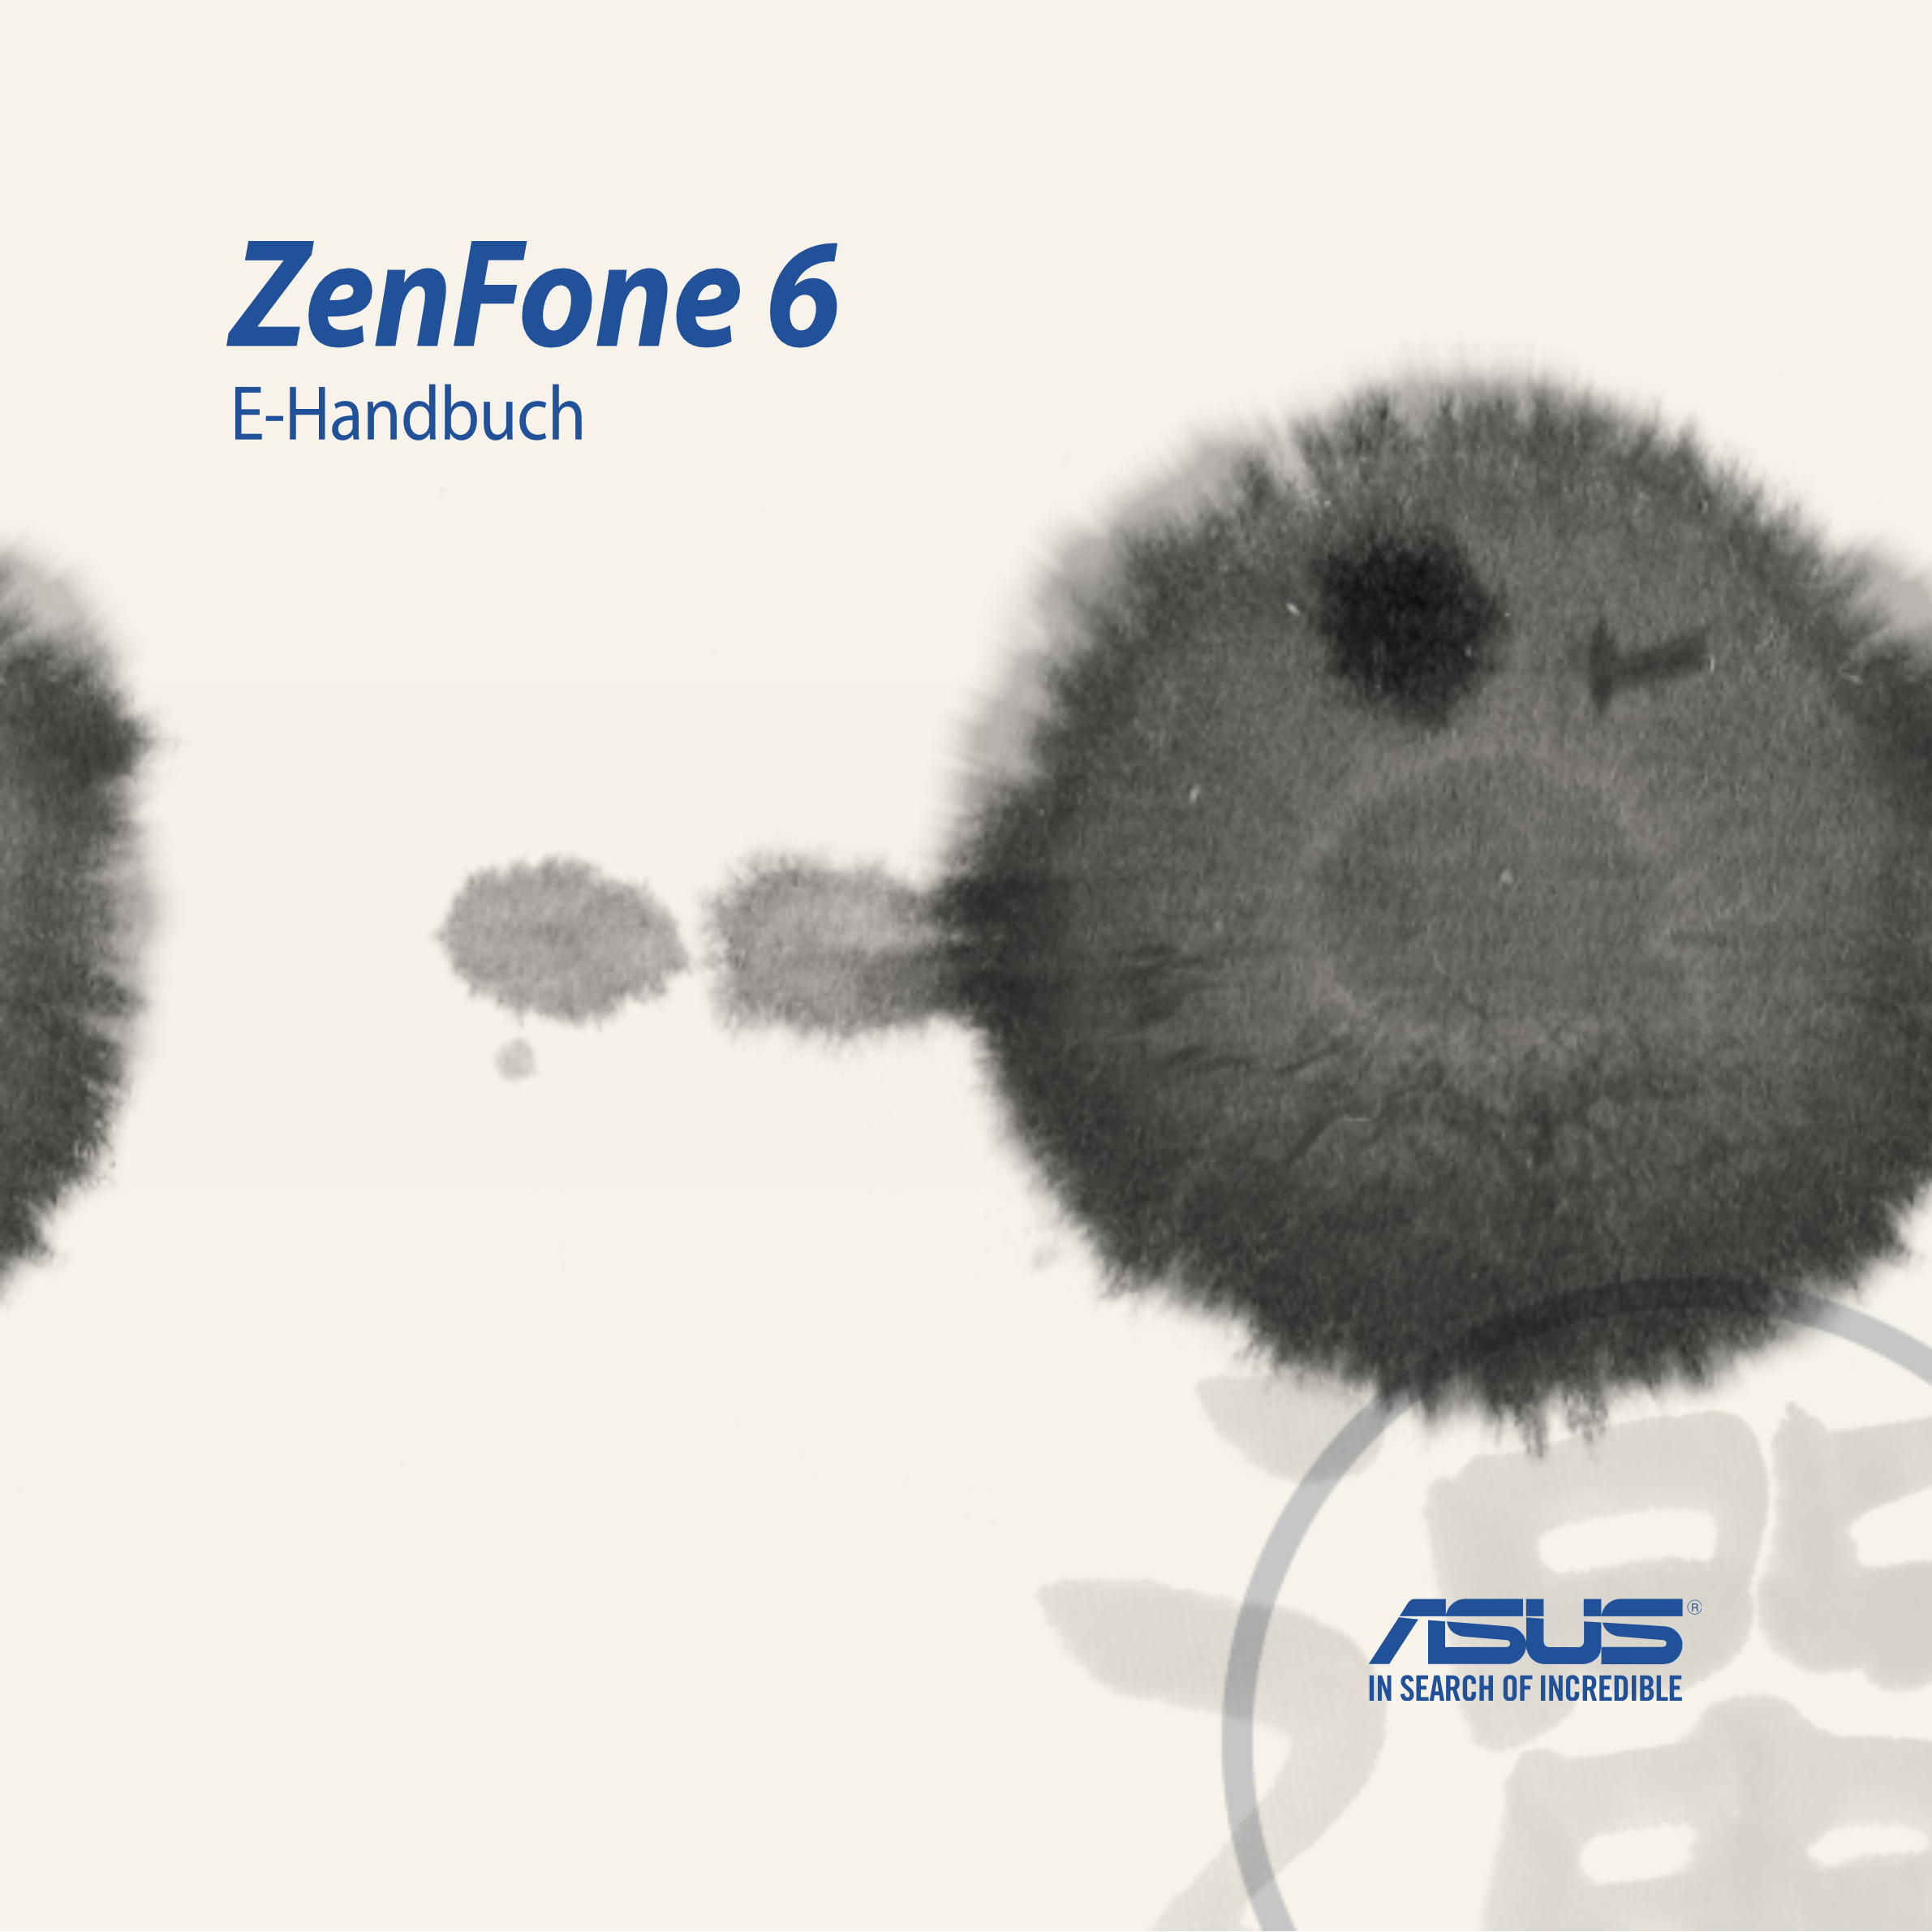 ZenFone 6
E-Handbuch